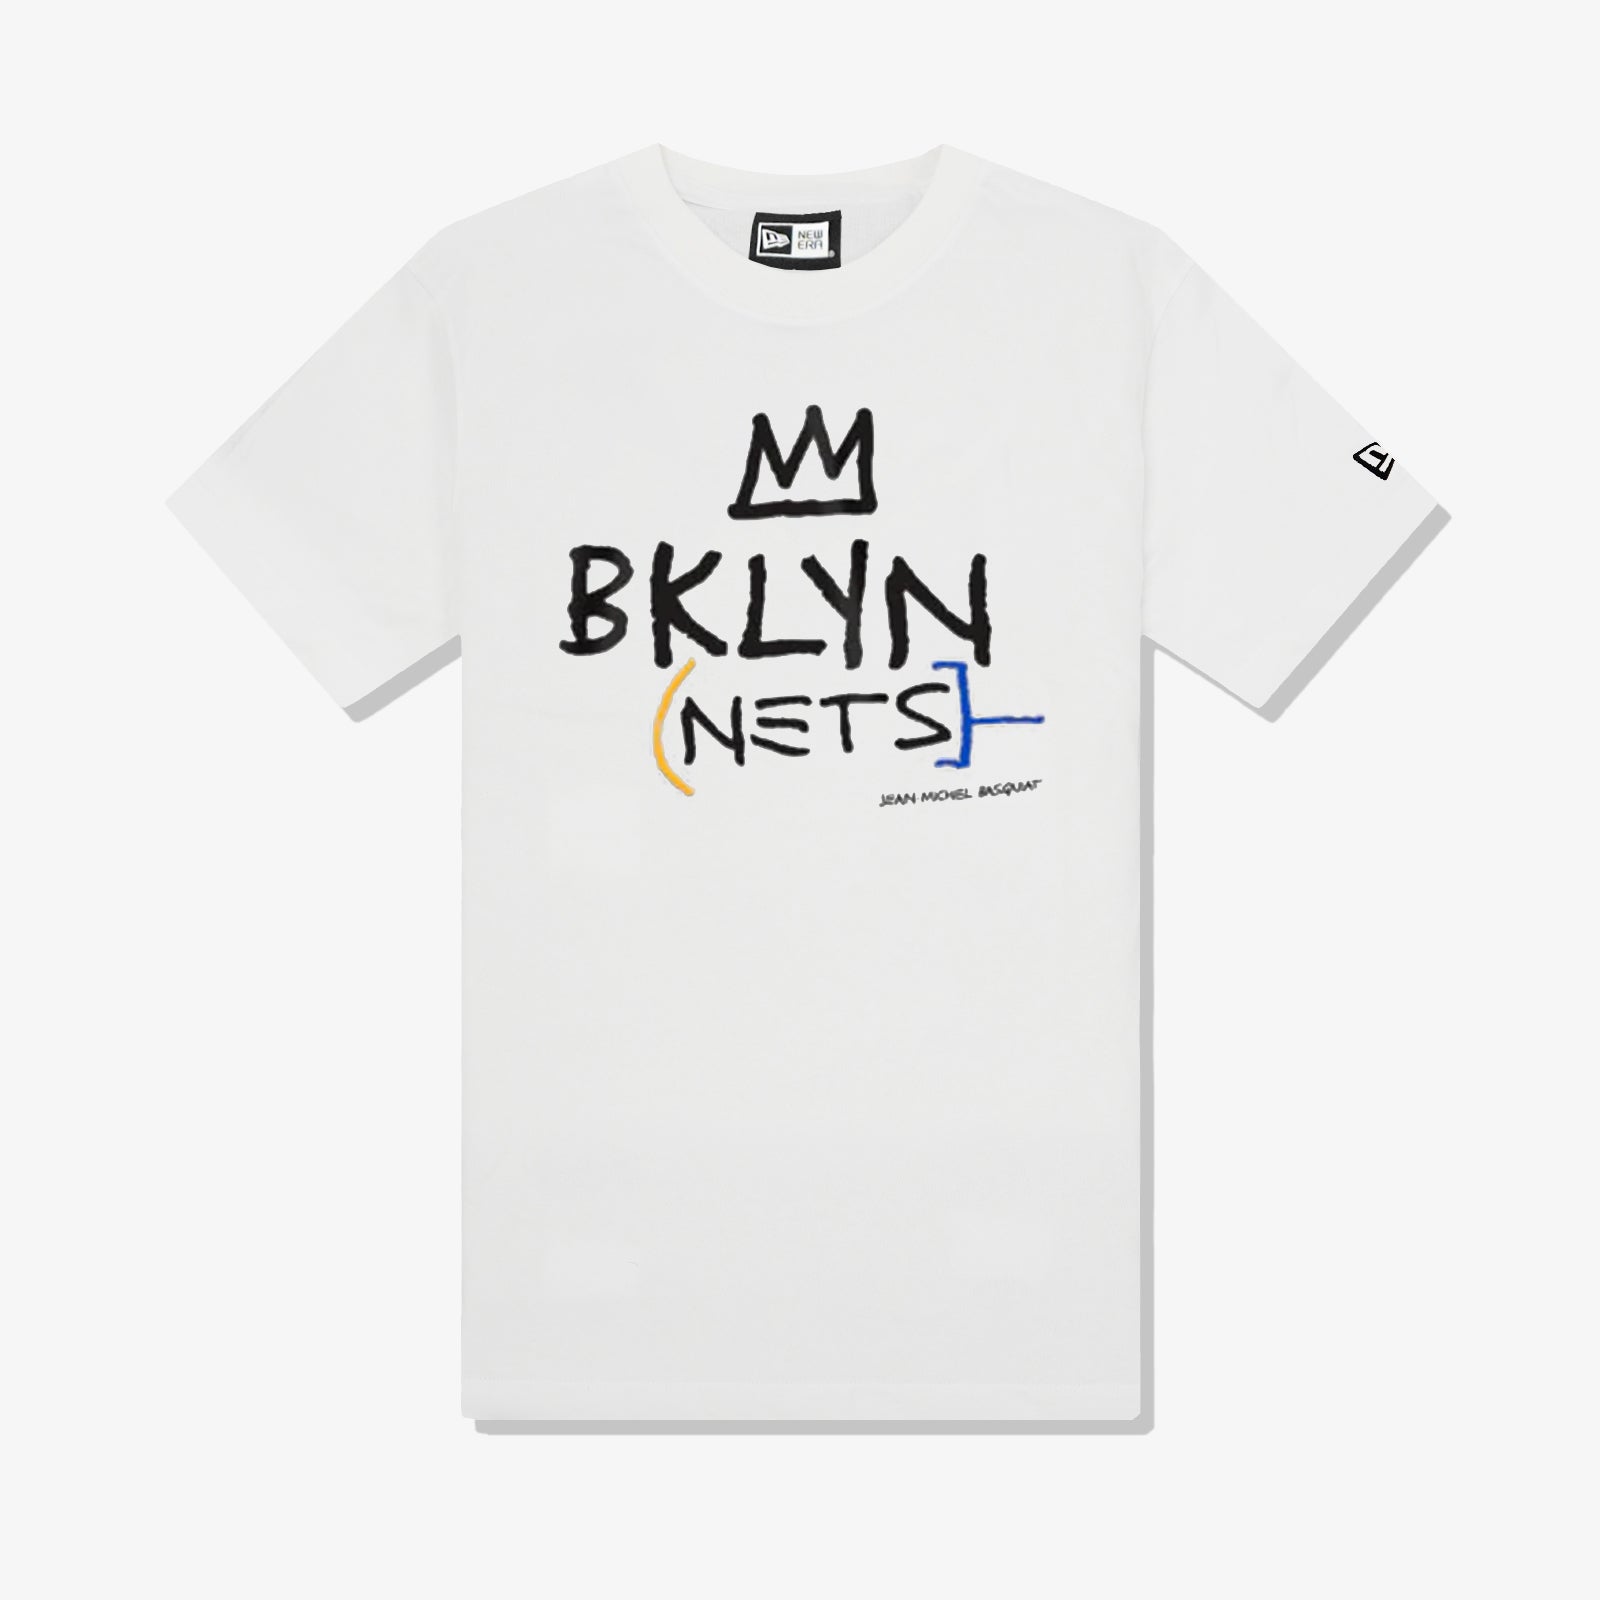 Brooklyn x Jean-Michel Basquiat in white ⚪🎨⚫ The Nets debut